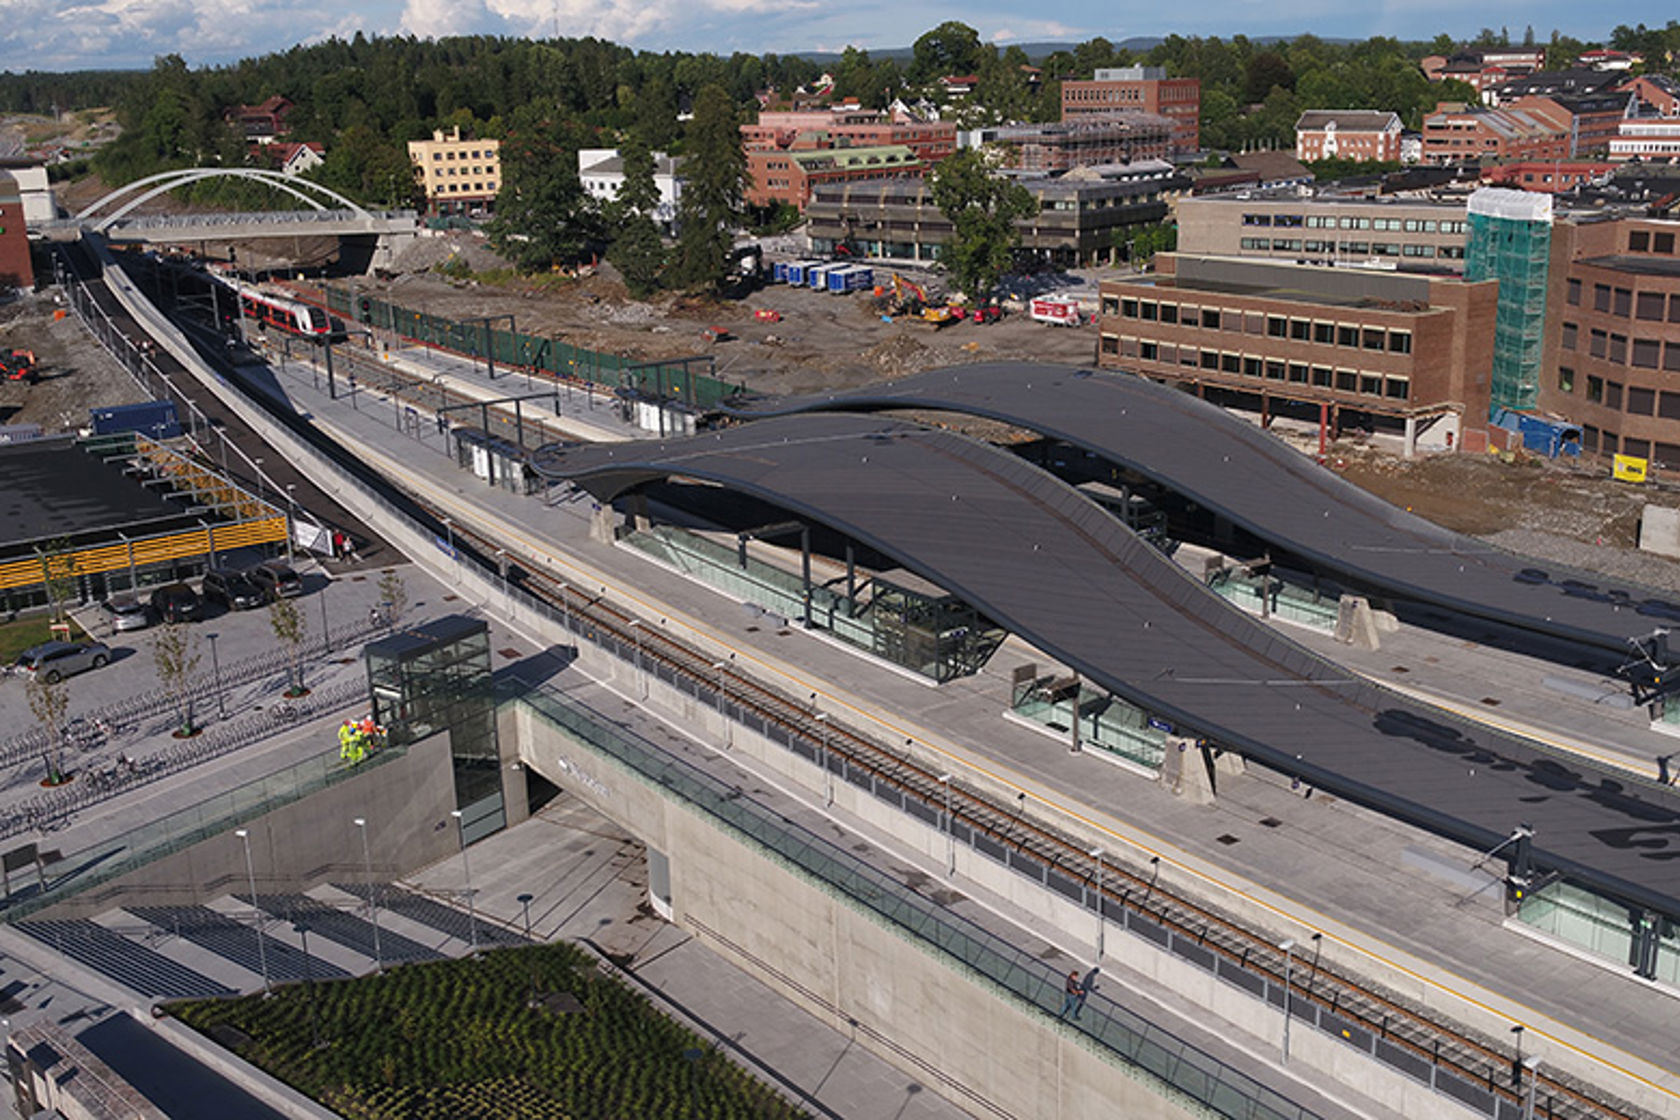 Et flyfoto over en jernbanestasjon. Bildet viser plattformer under tak og jernbanespor. 